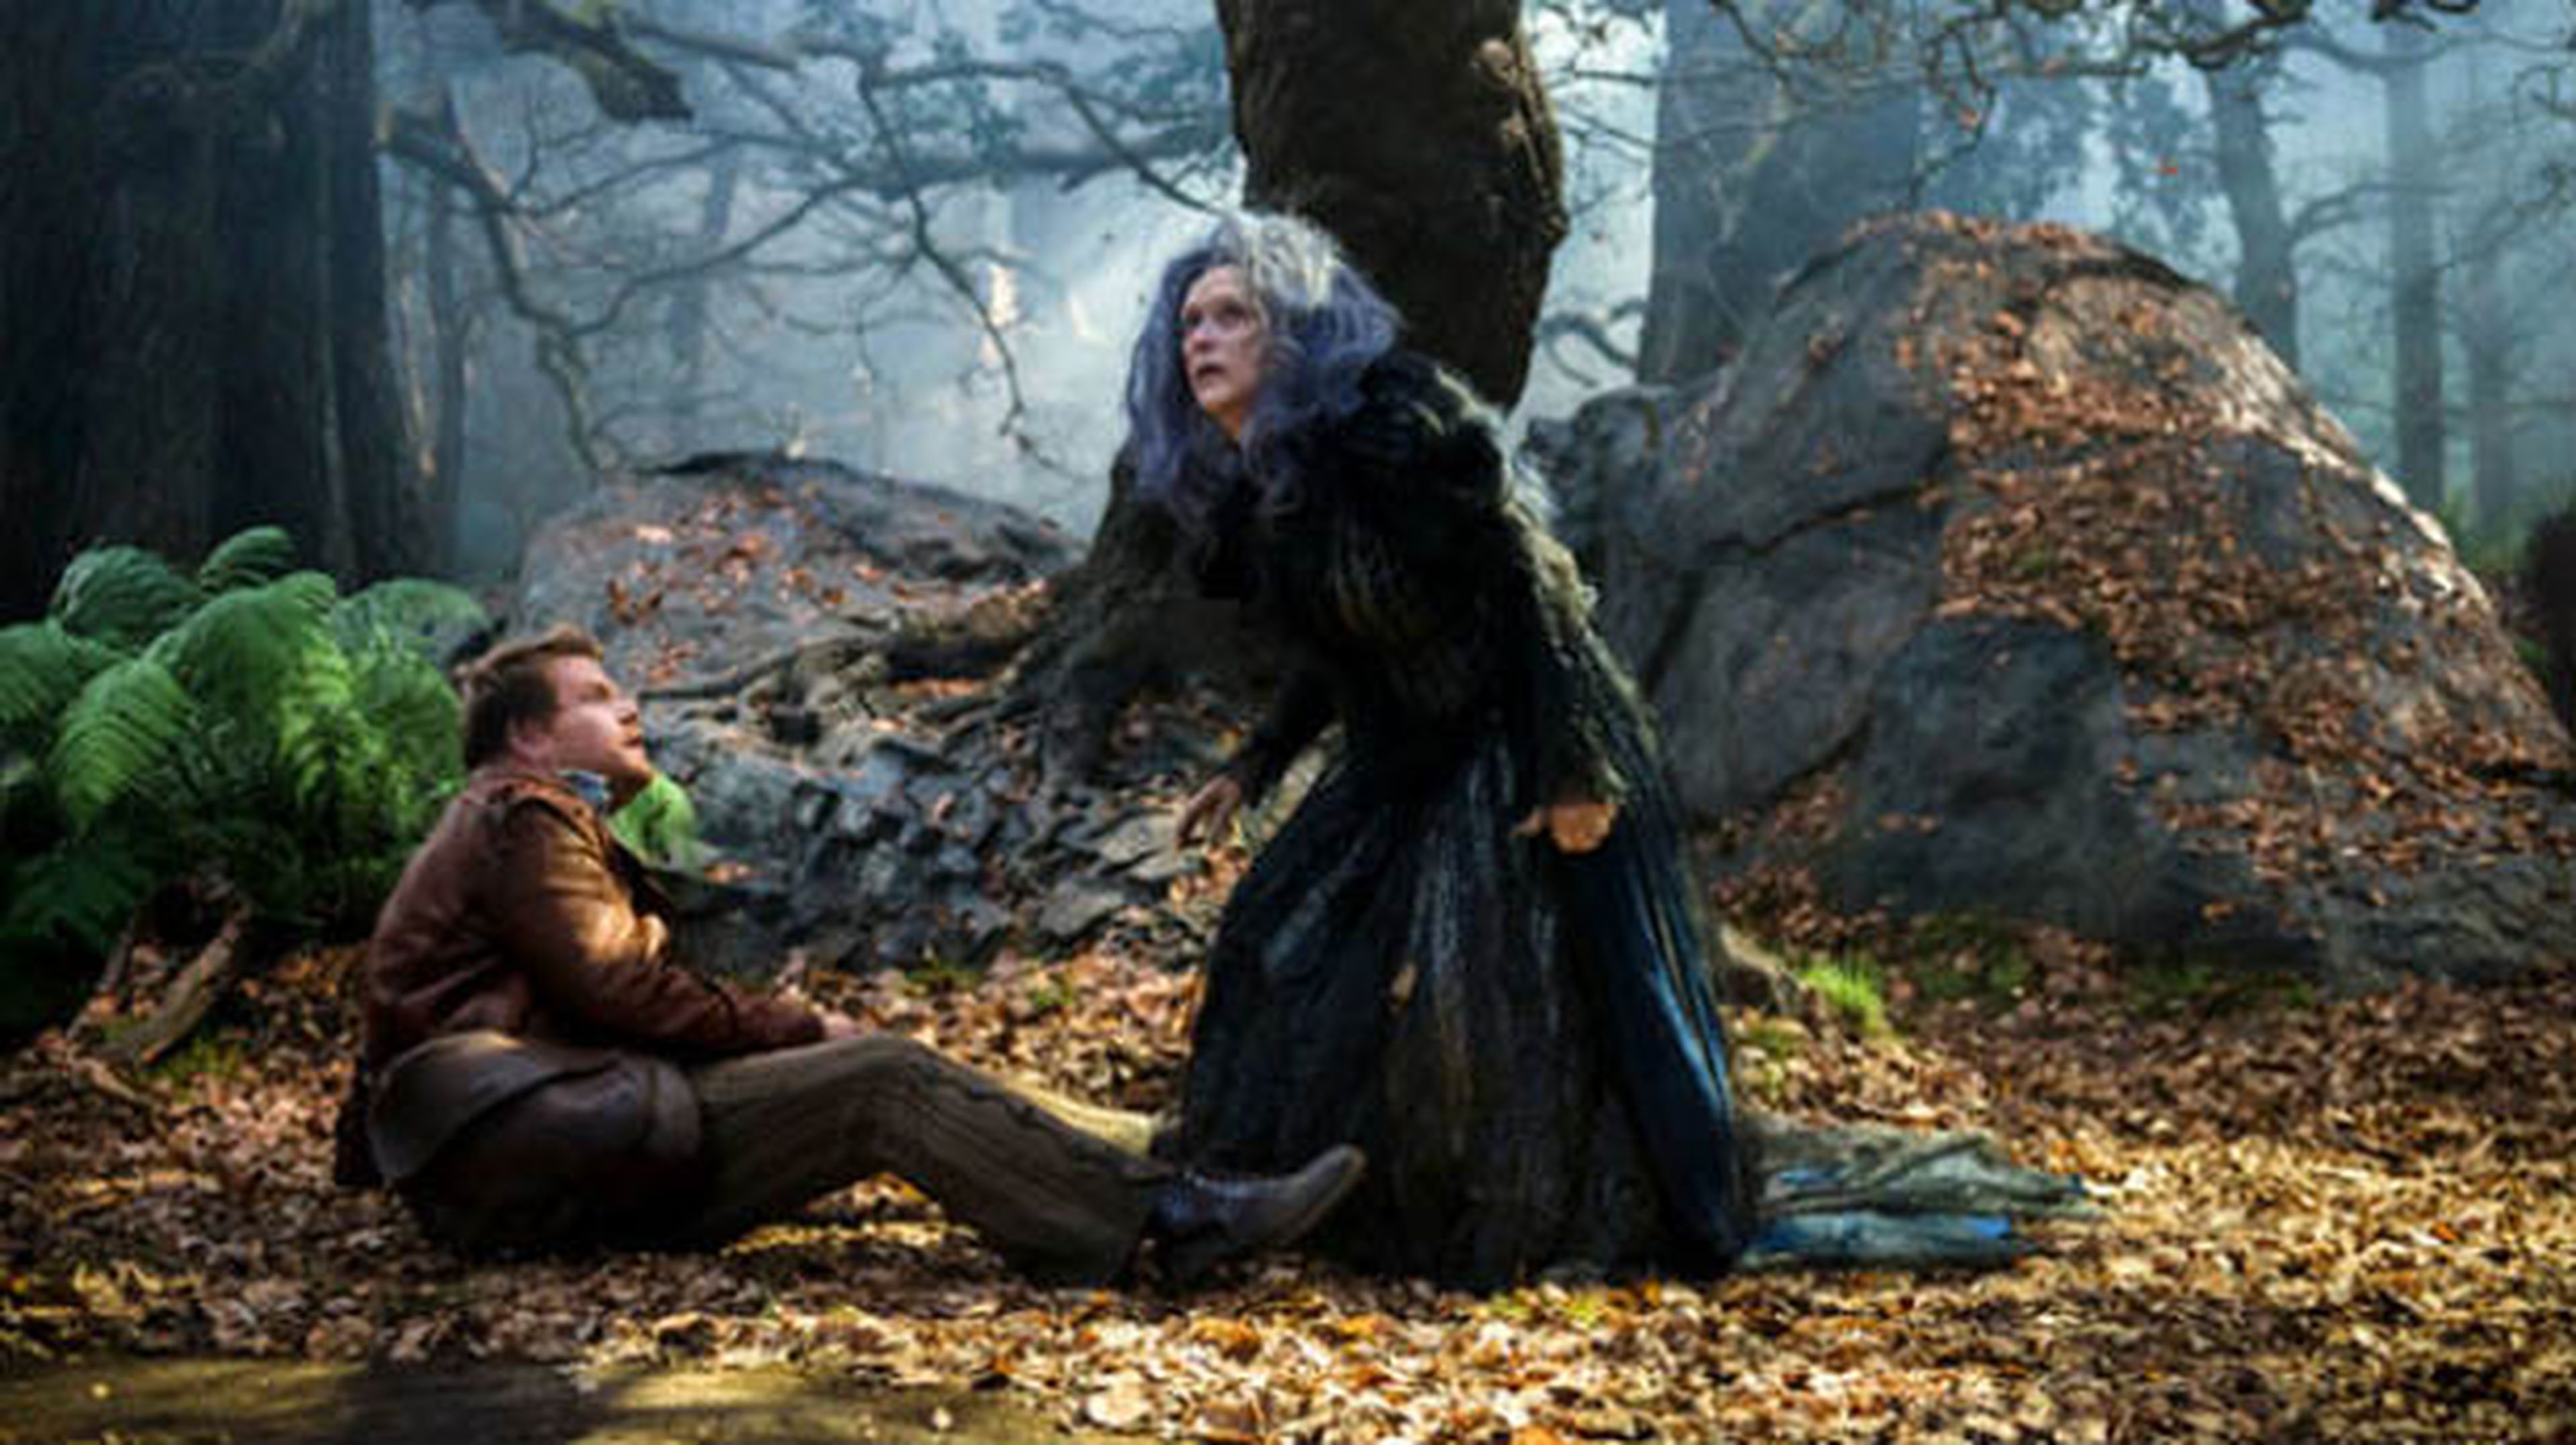 Meryl Streep da vida a una bruja en el primer tráiler de En el bosque